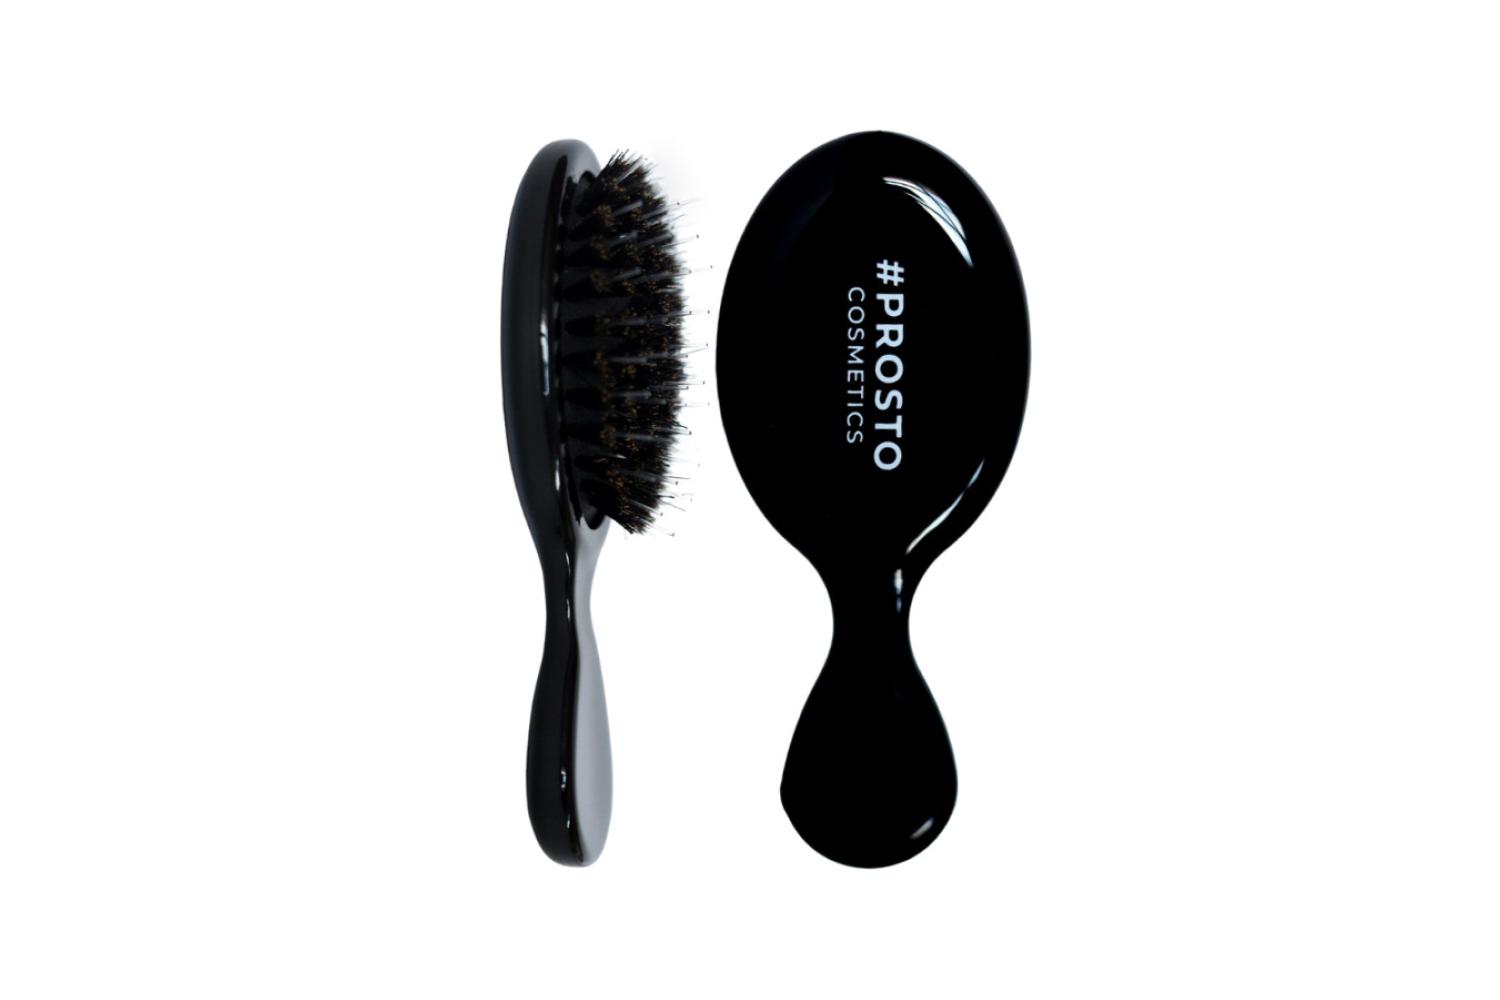 Инновационная расческа #Prosto для бережного распутывания волос, Prosto Cosmetics, 790 руб. (prostocosmetics.com)